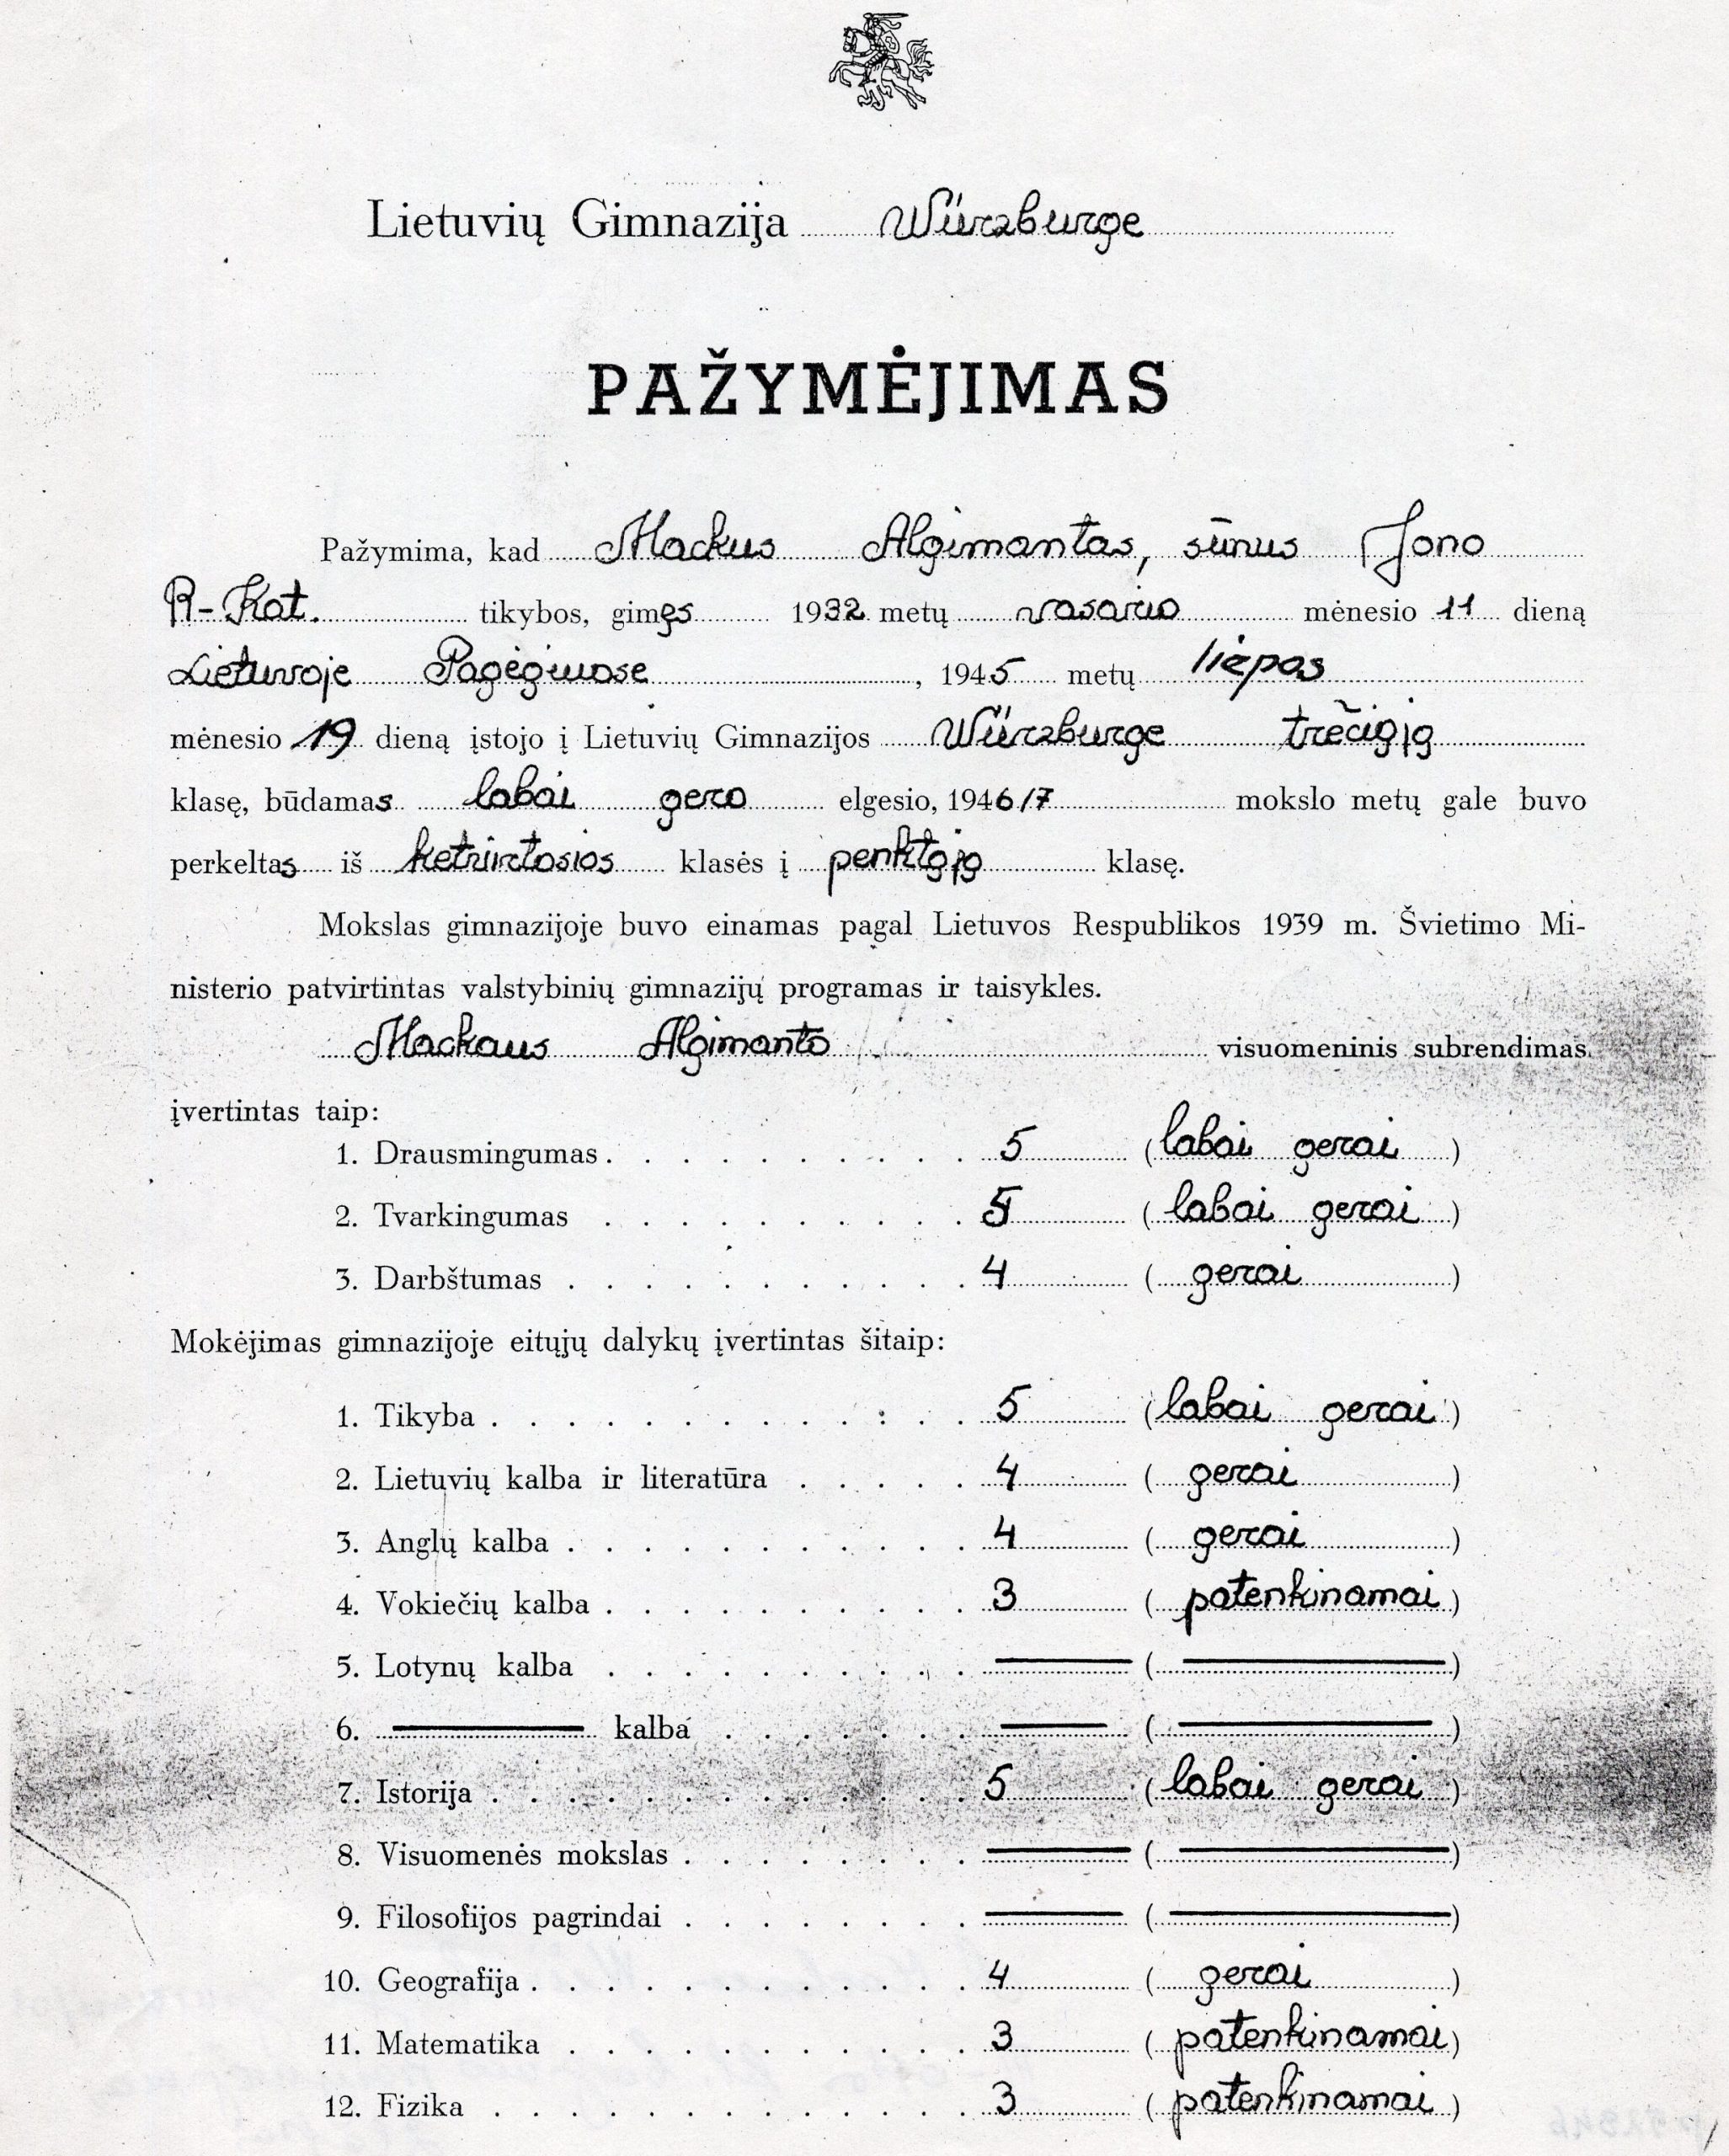 Lietuvių gimnazijos Wurzburge pažymėjimas, išduotas A. Mackui. P52846; Originalas LTSC